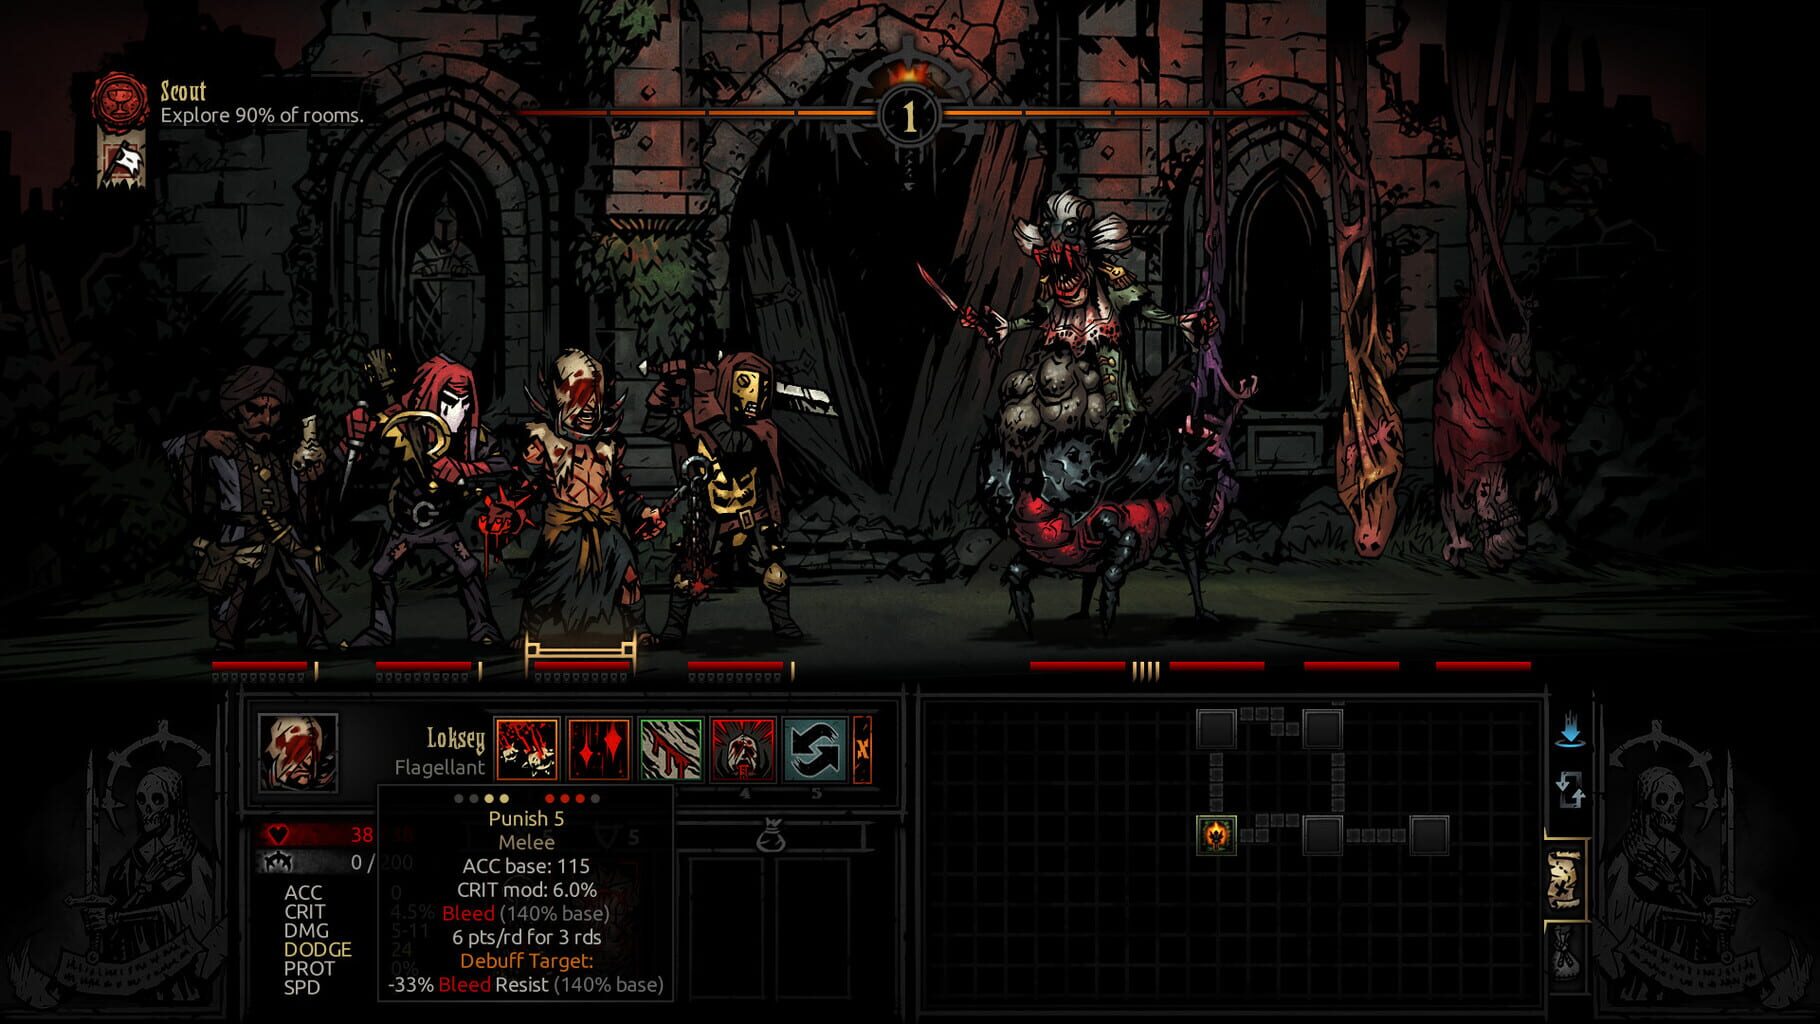 Darkest Dungeon: The Crimson Court screenshot